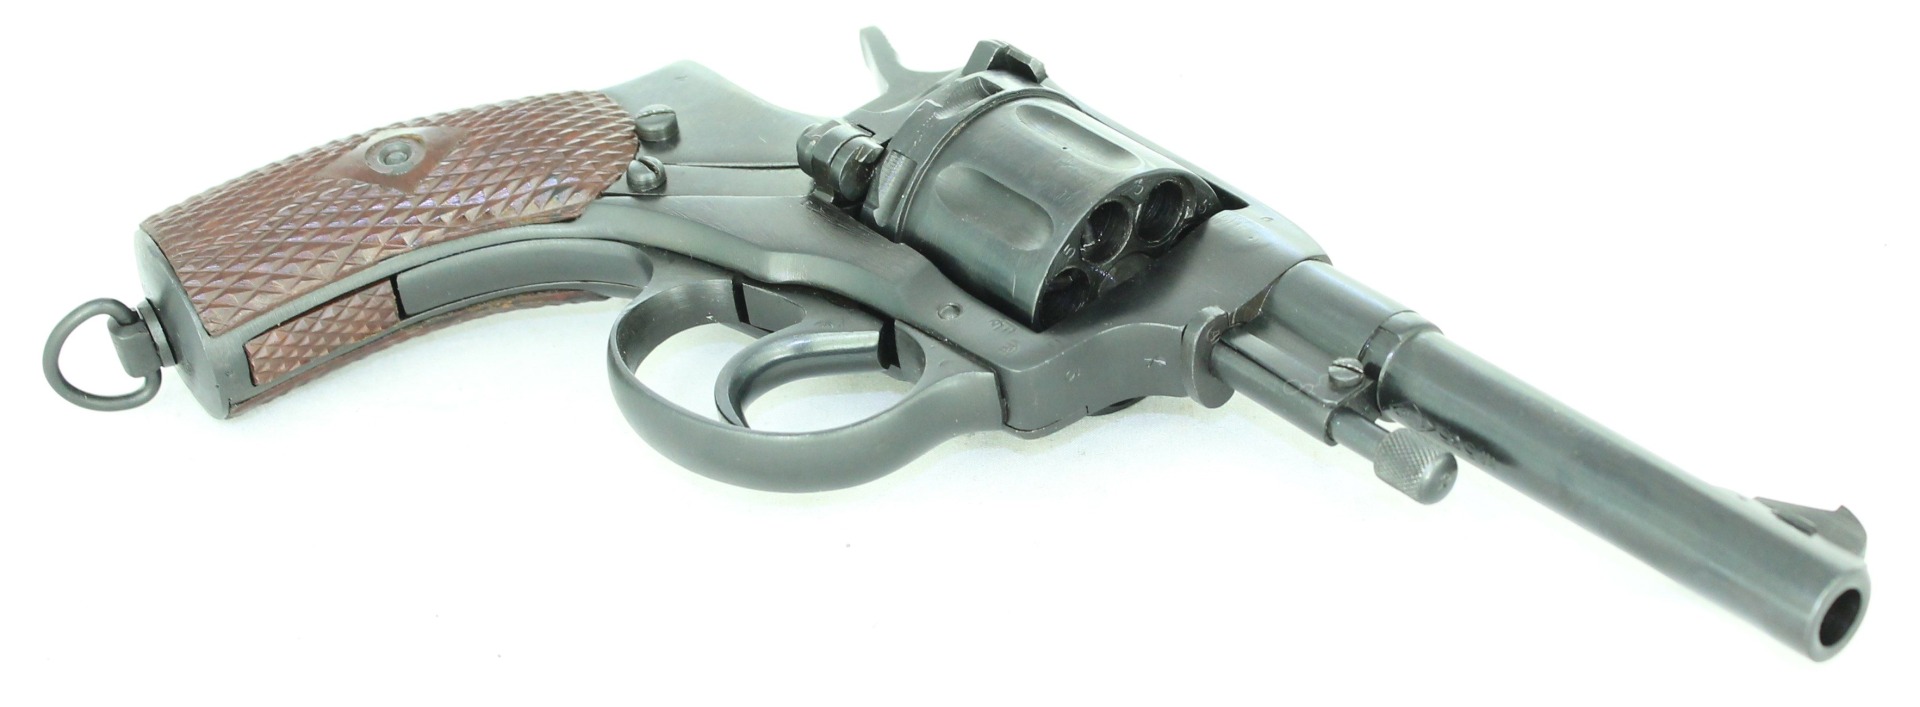 Охолощенный револьвер Наган СХ 